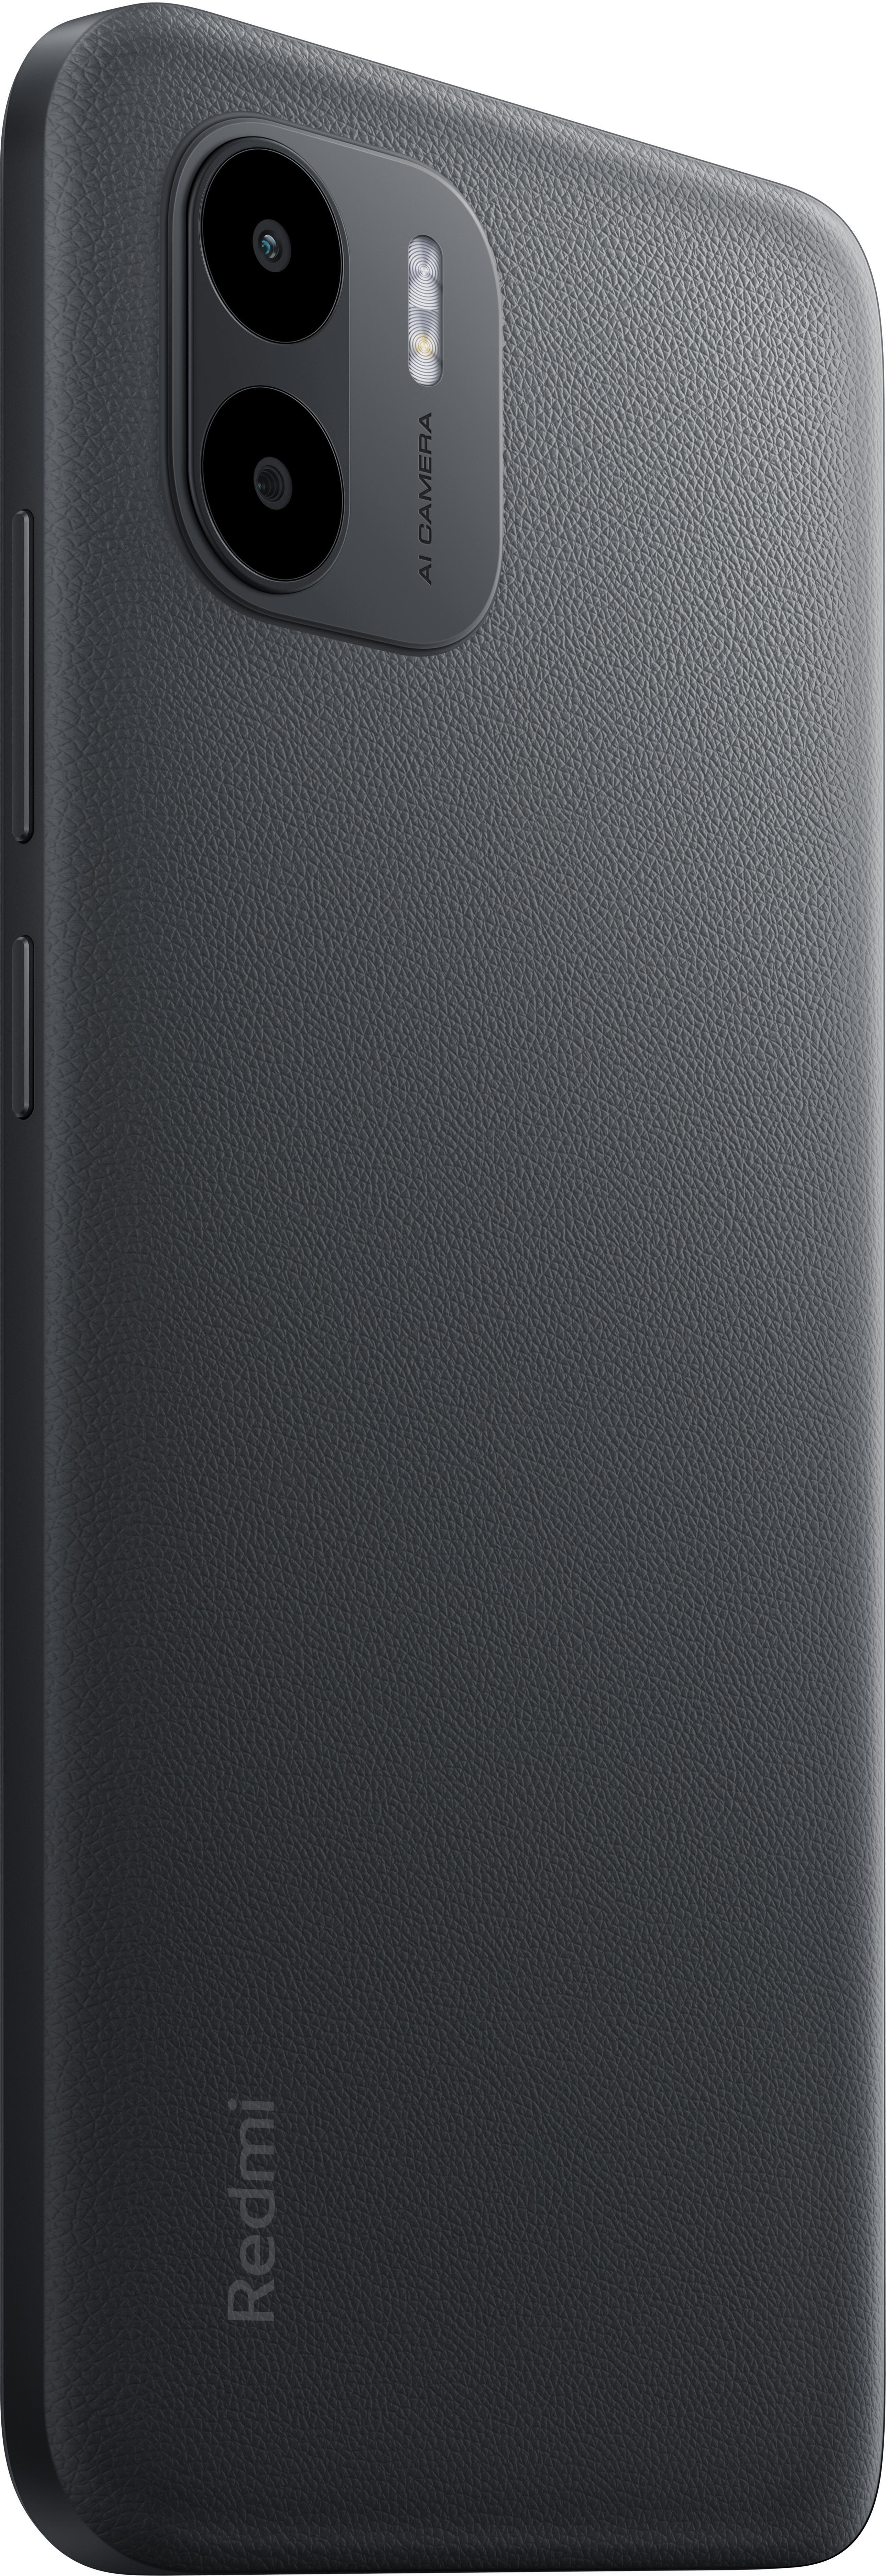 Xiaomi - Smartphone Xiaomi Redmi A2 6.52? 3GB 64GB Dual SIM Black